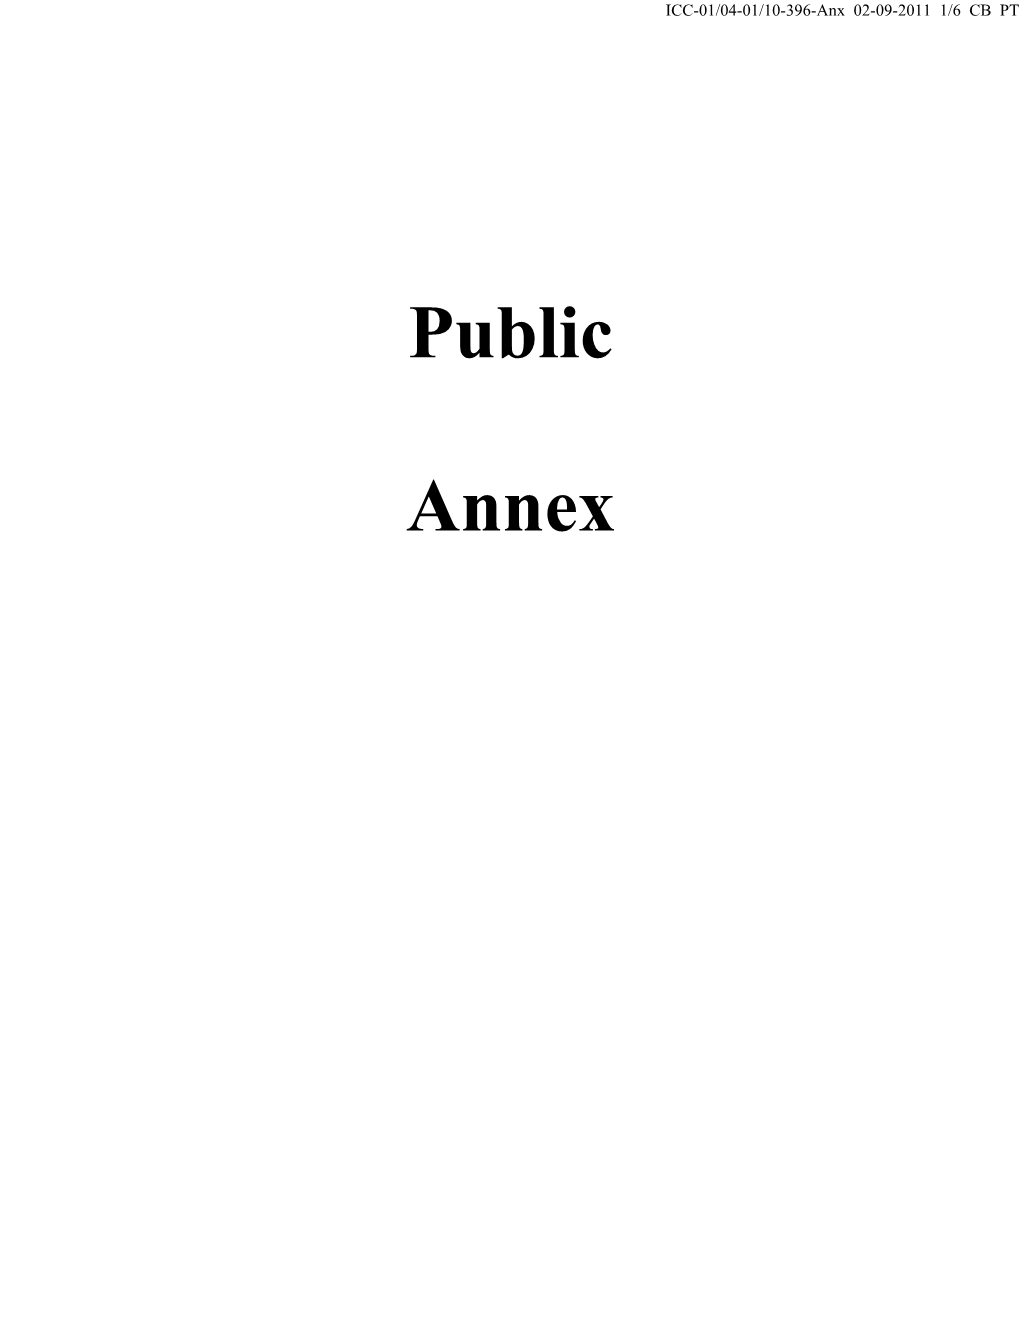 Public Annex